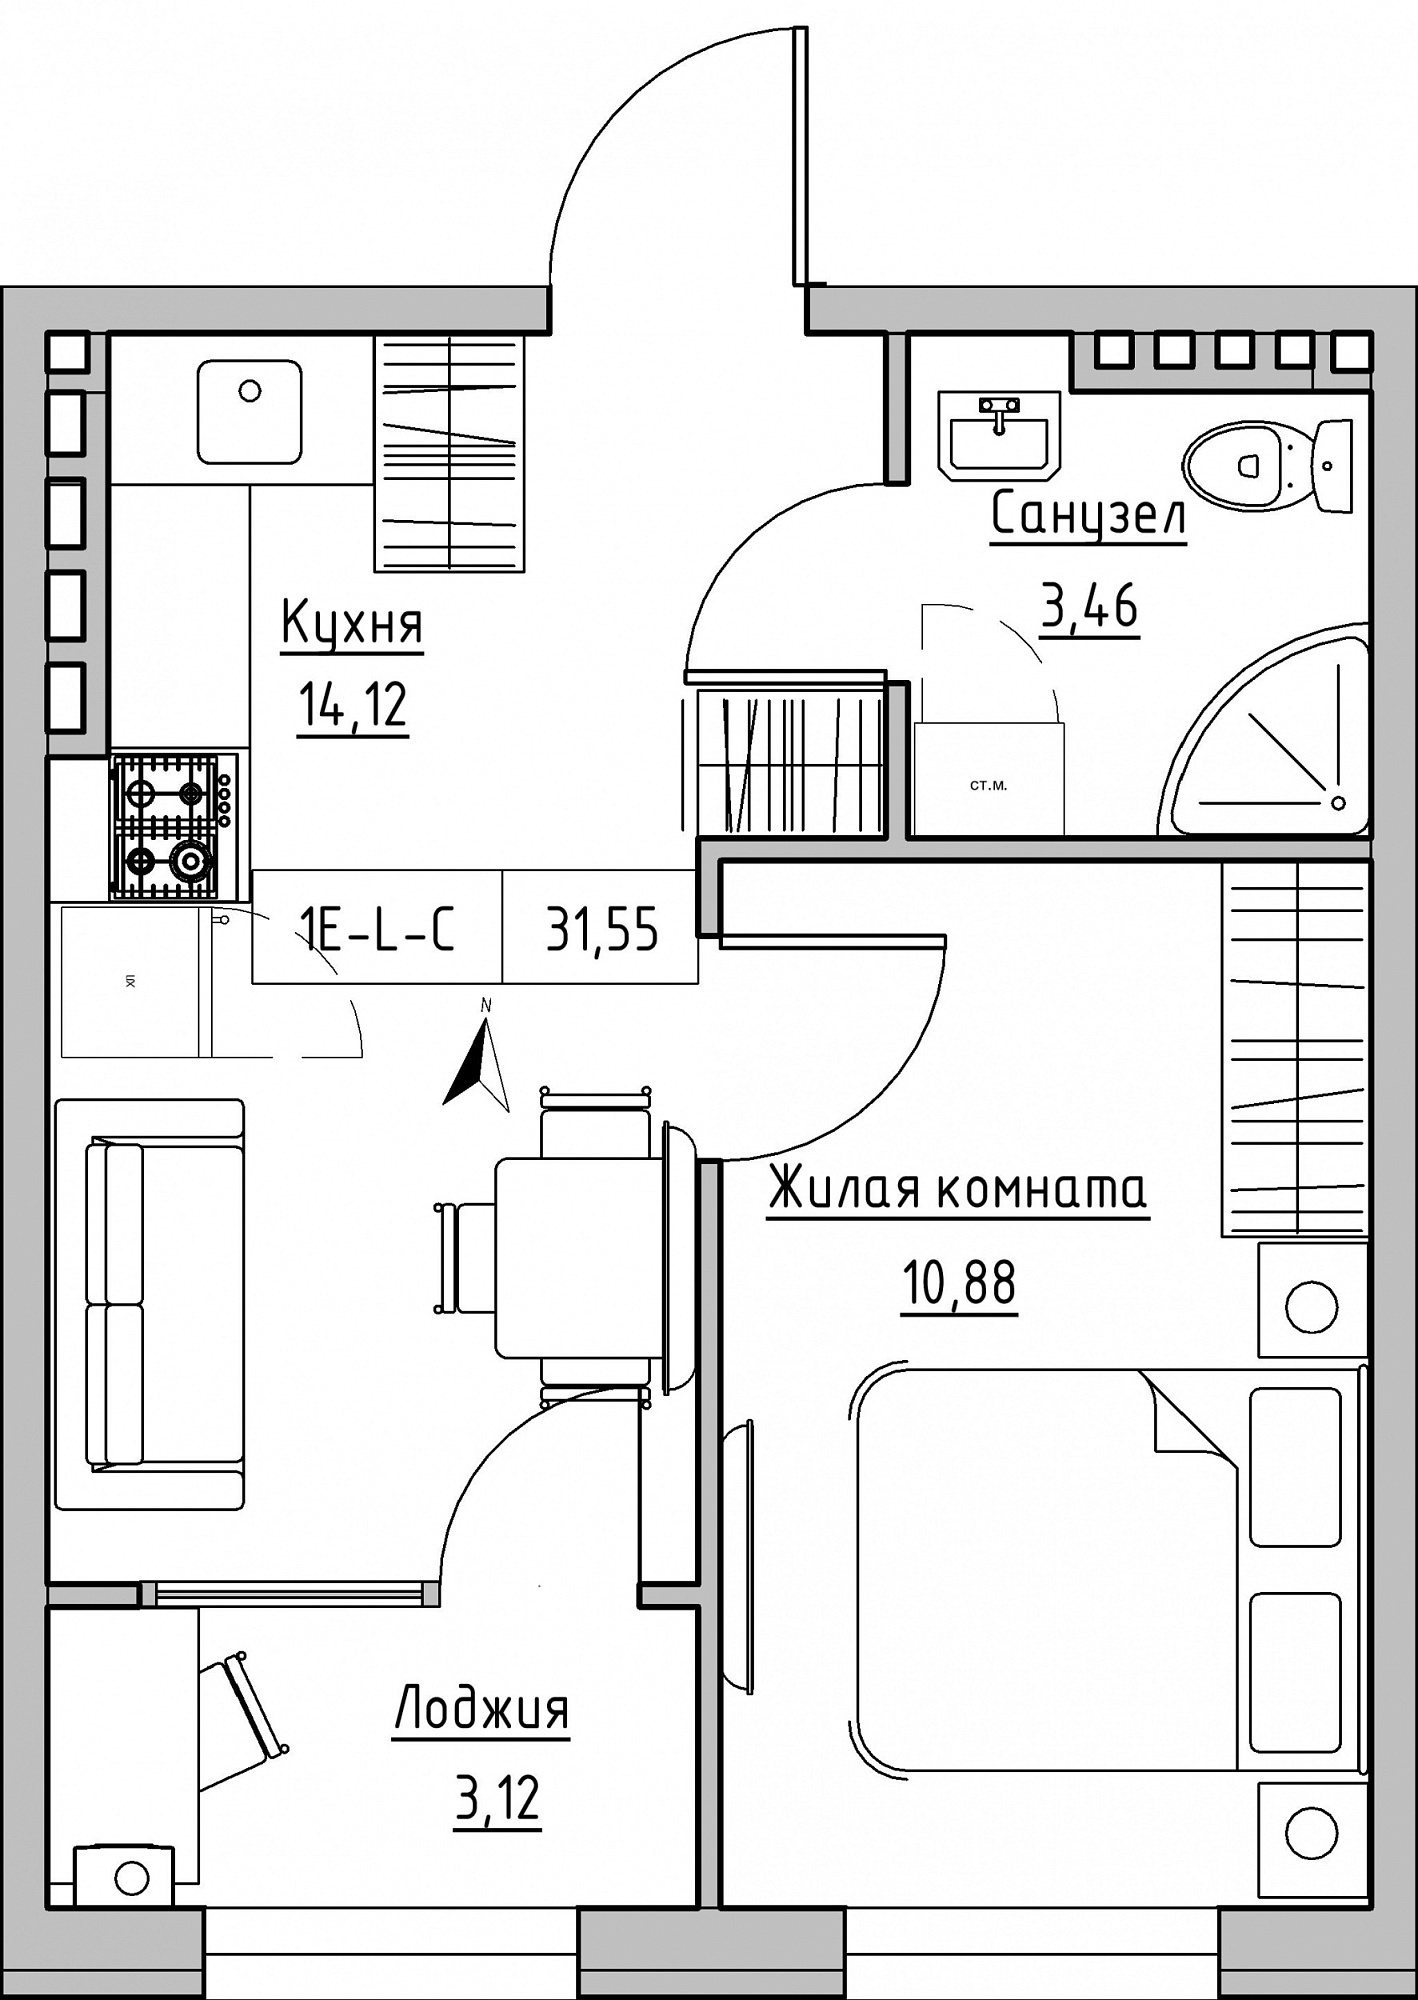 Планировка 1-к квартира площей 31.55м2, KS-024-04/0007.